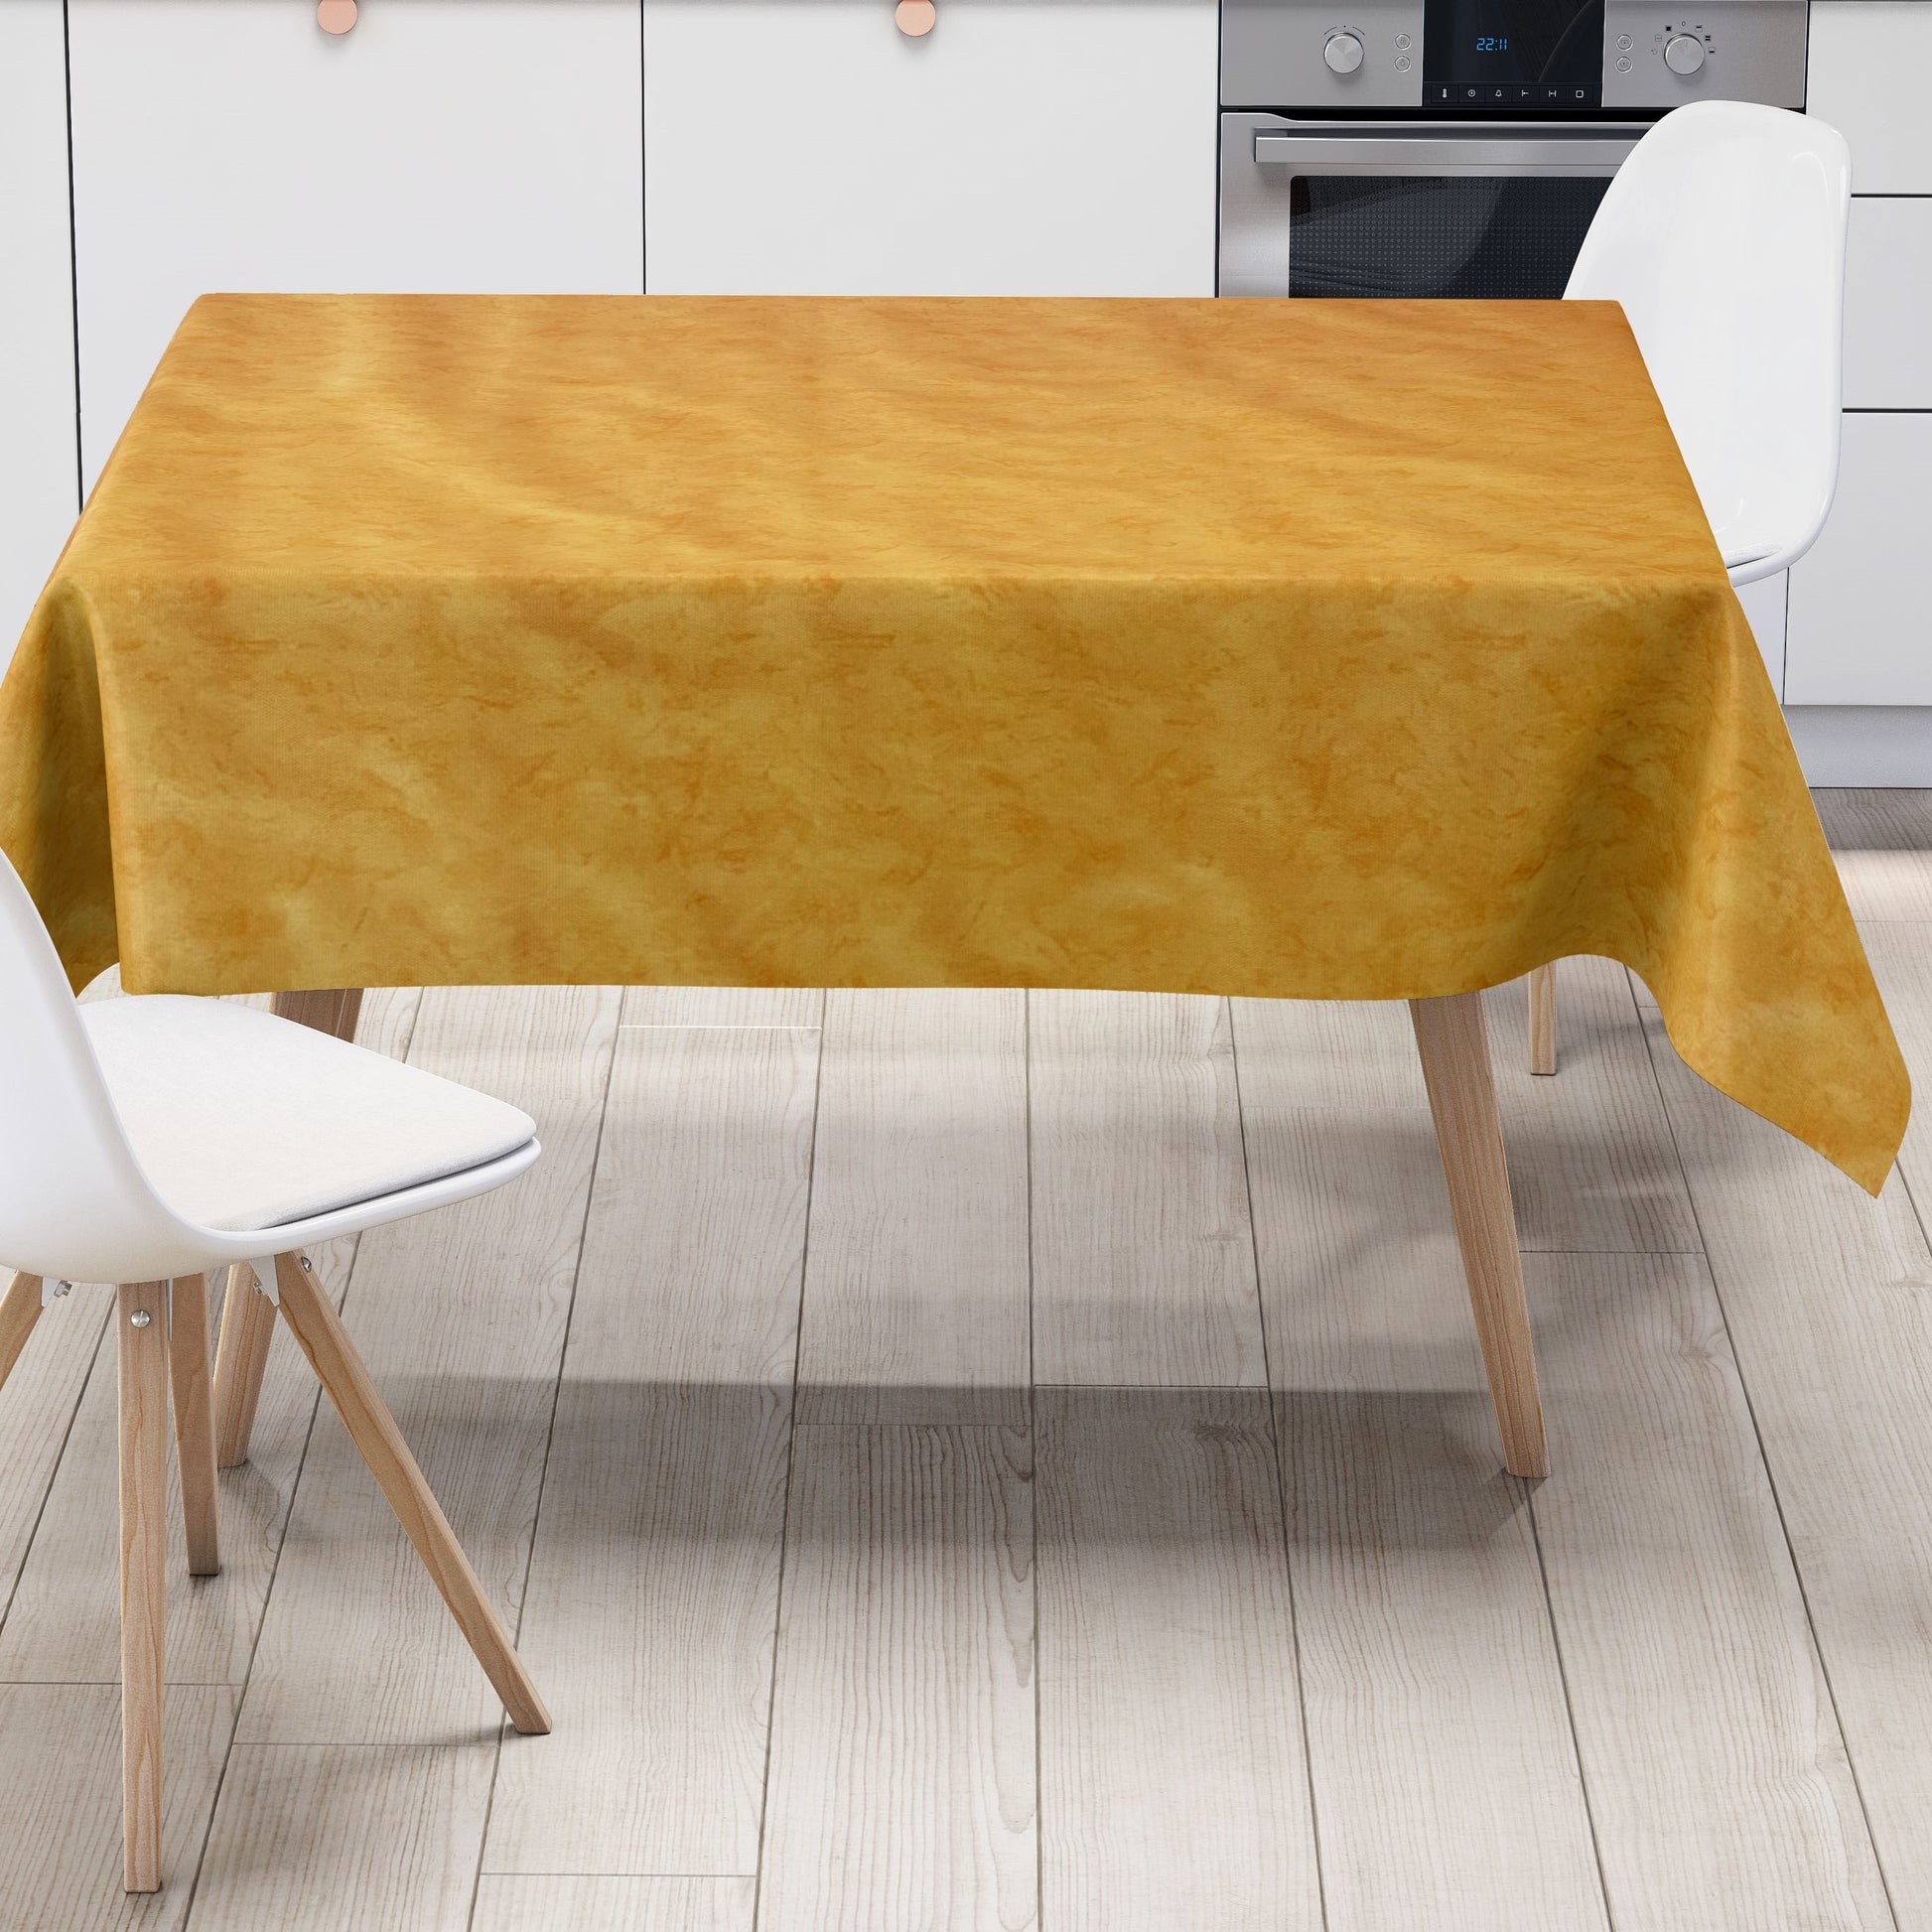 Wachstuch orange rund eckig oval gelb marmoriert – Tischdecke C142604